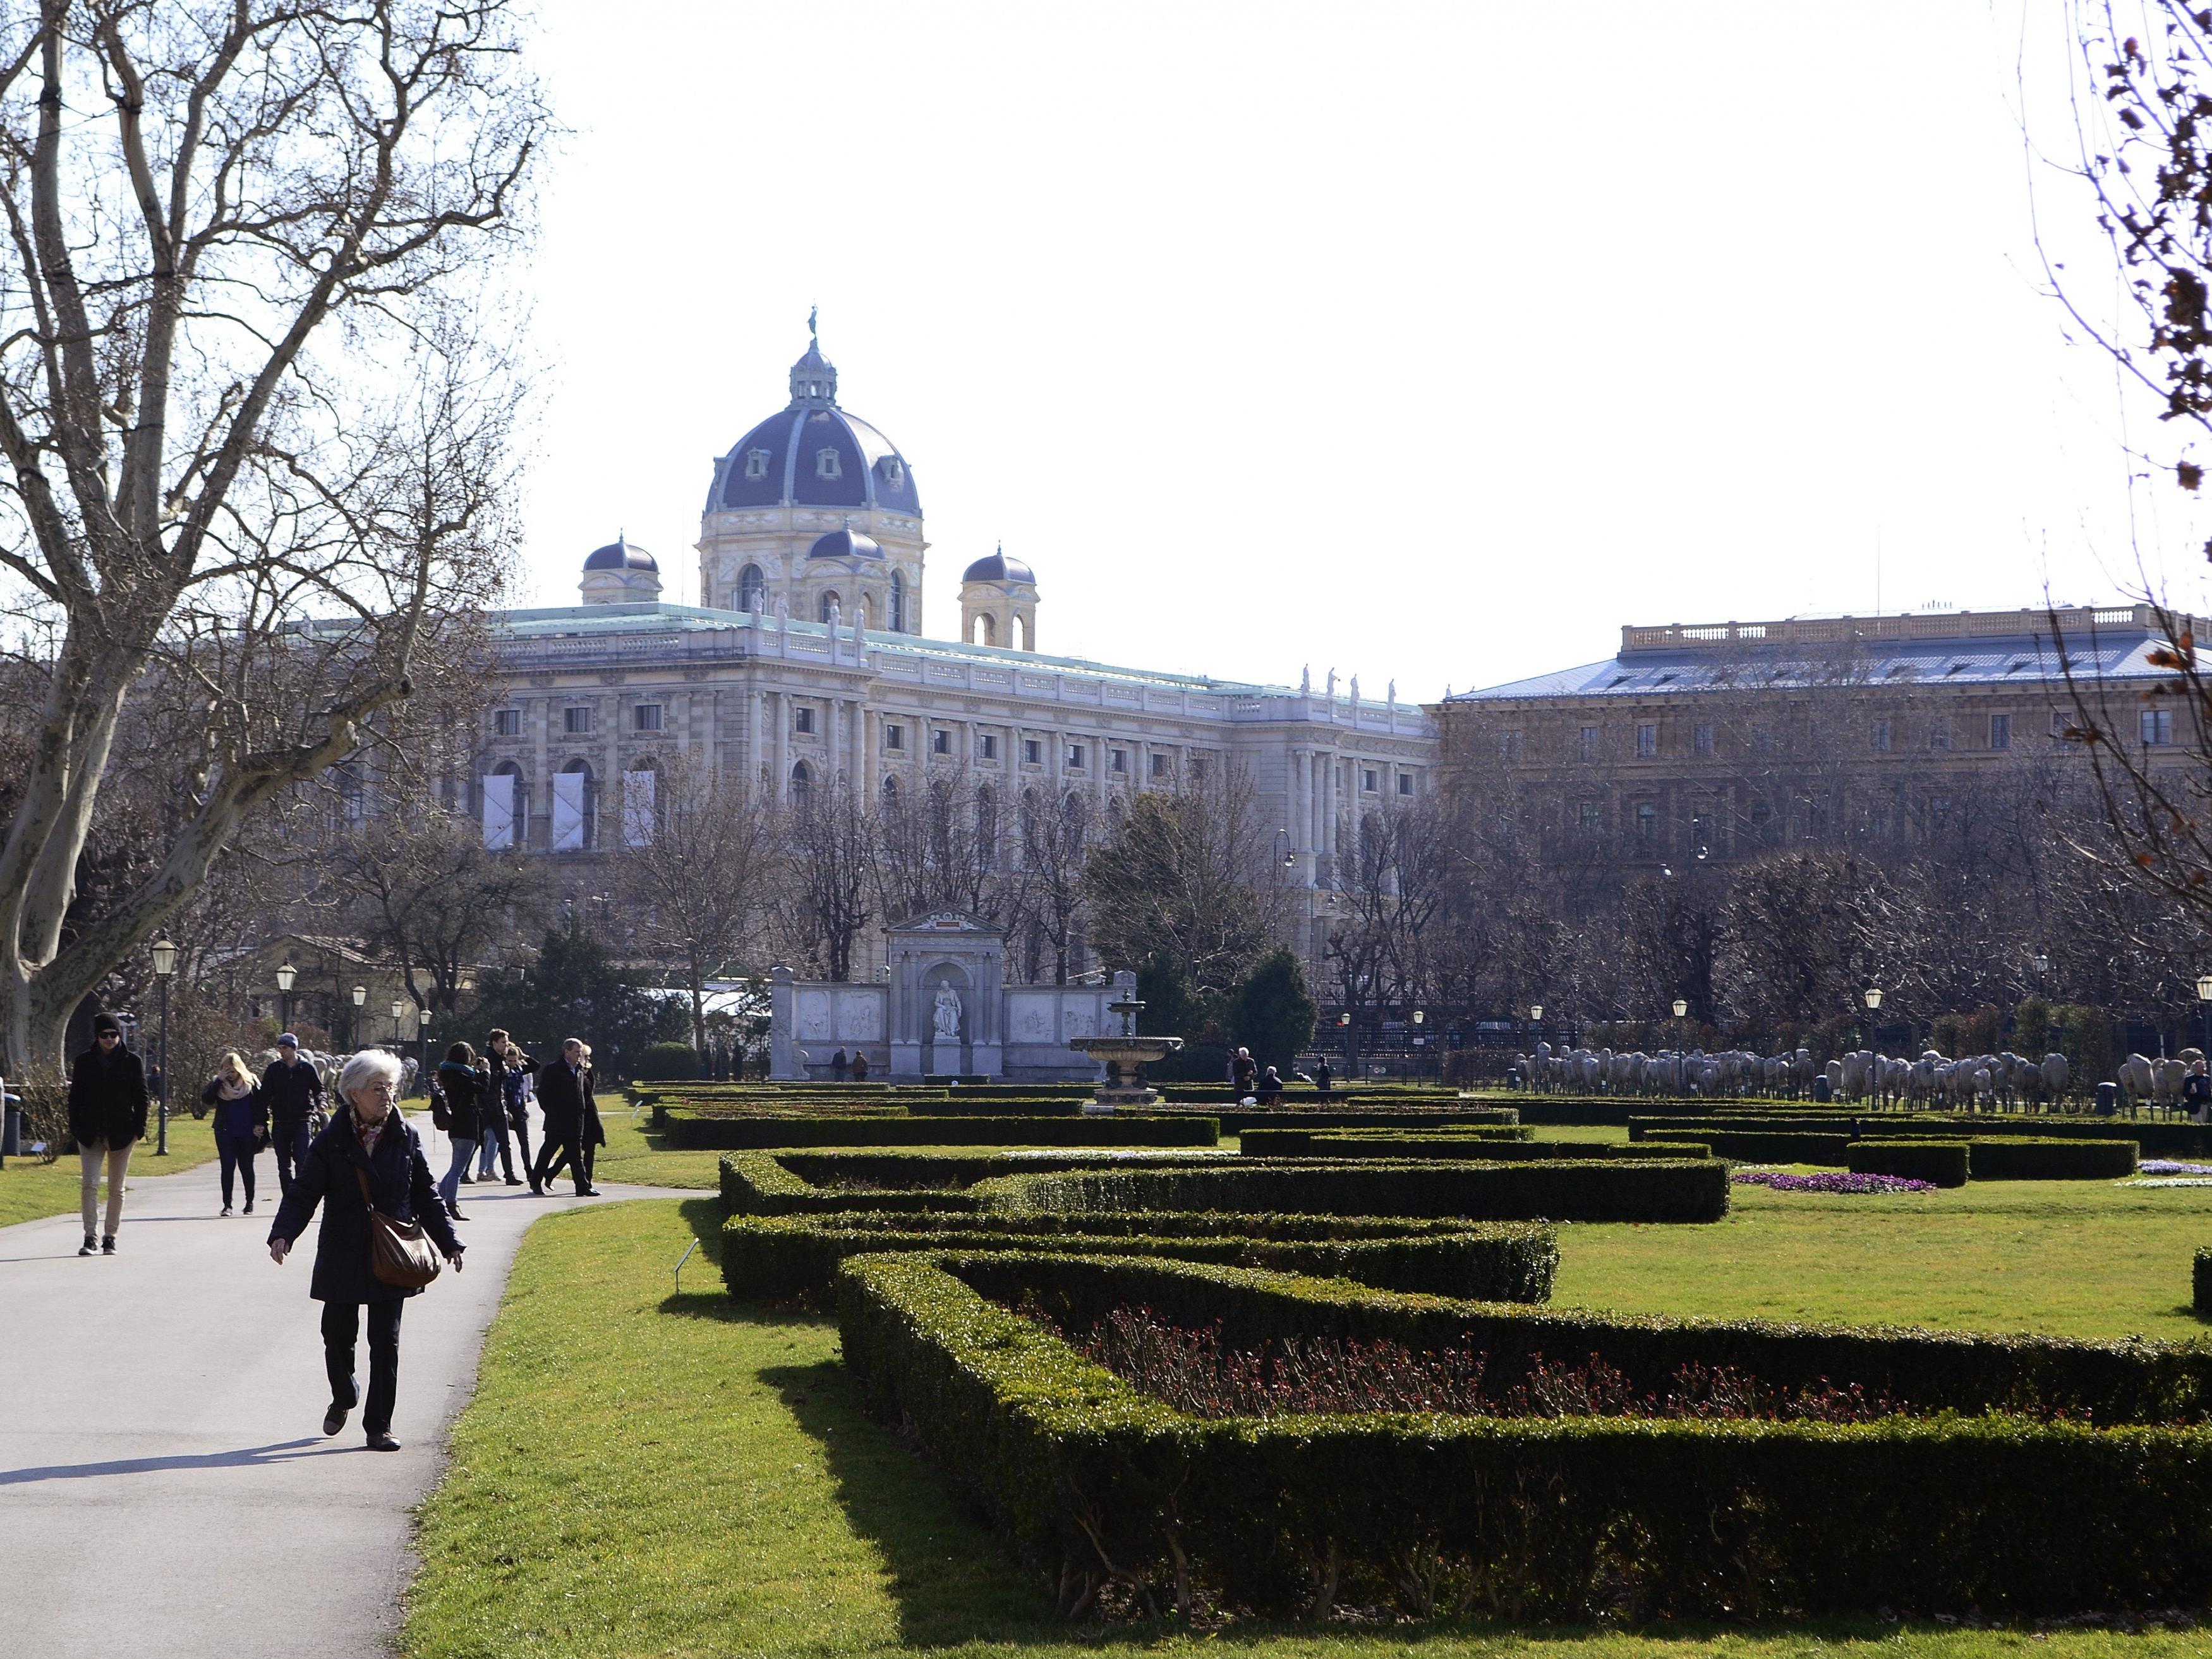 Städtereisen in Europa boomen - auch Wien wird gerne besucht.